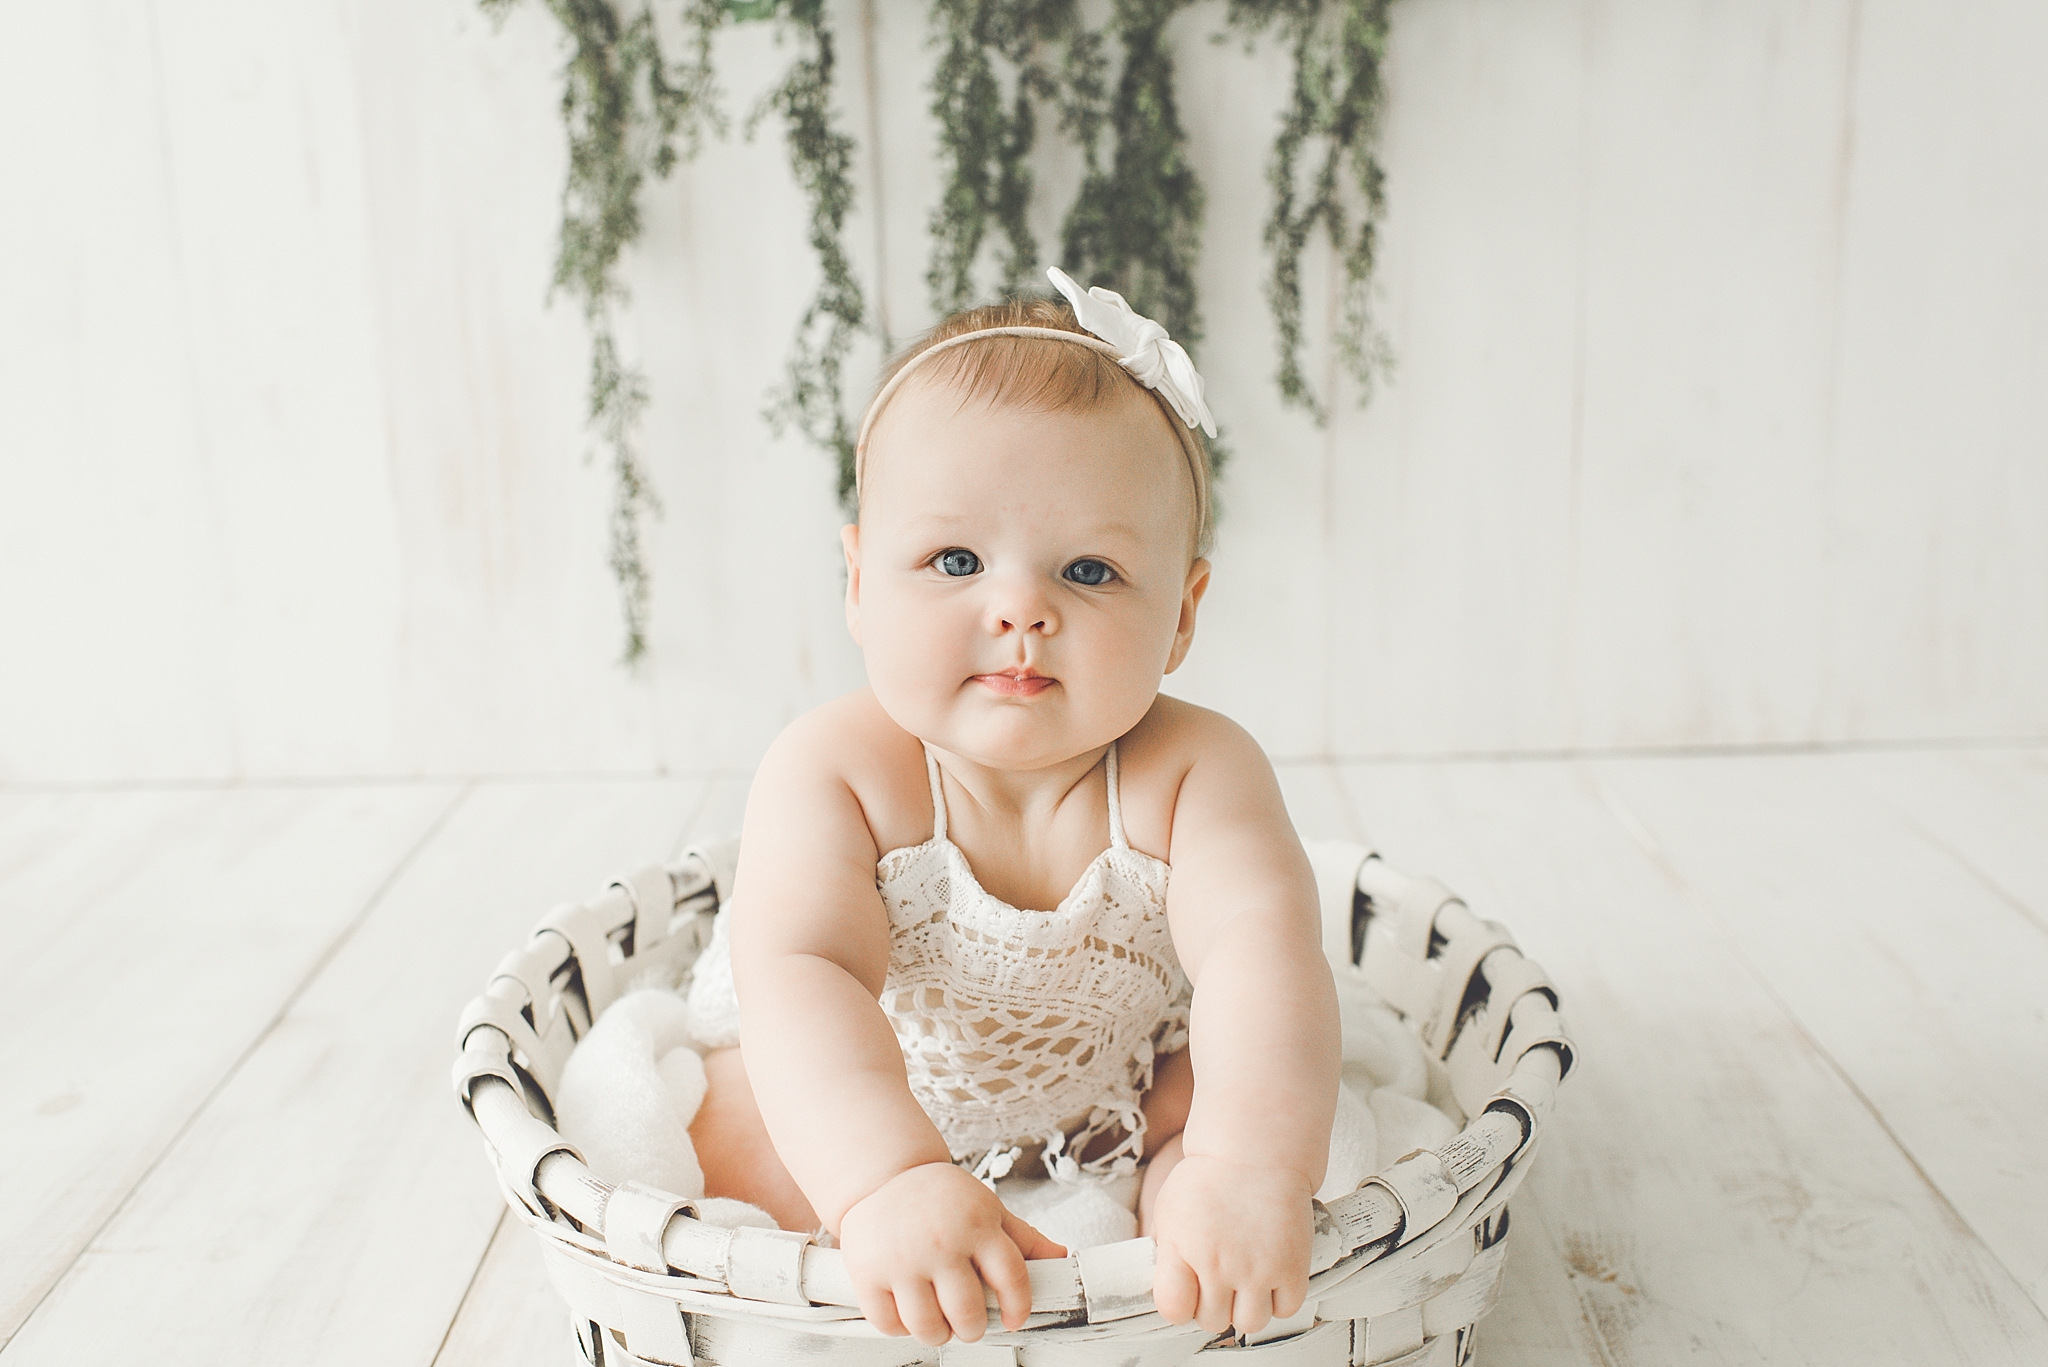 Oakwood Ohio Baby Photographer | Reese is sitting